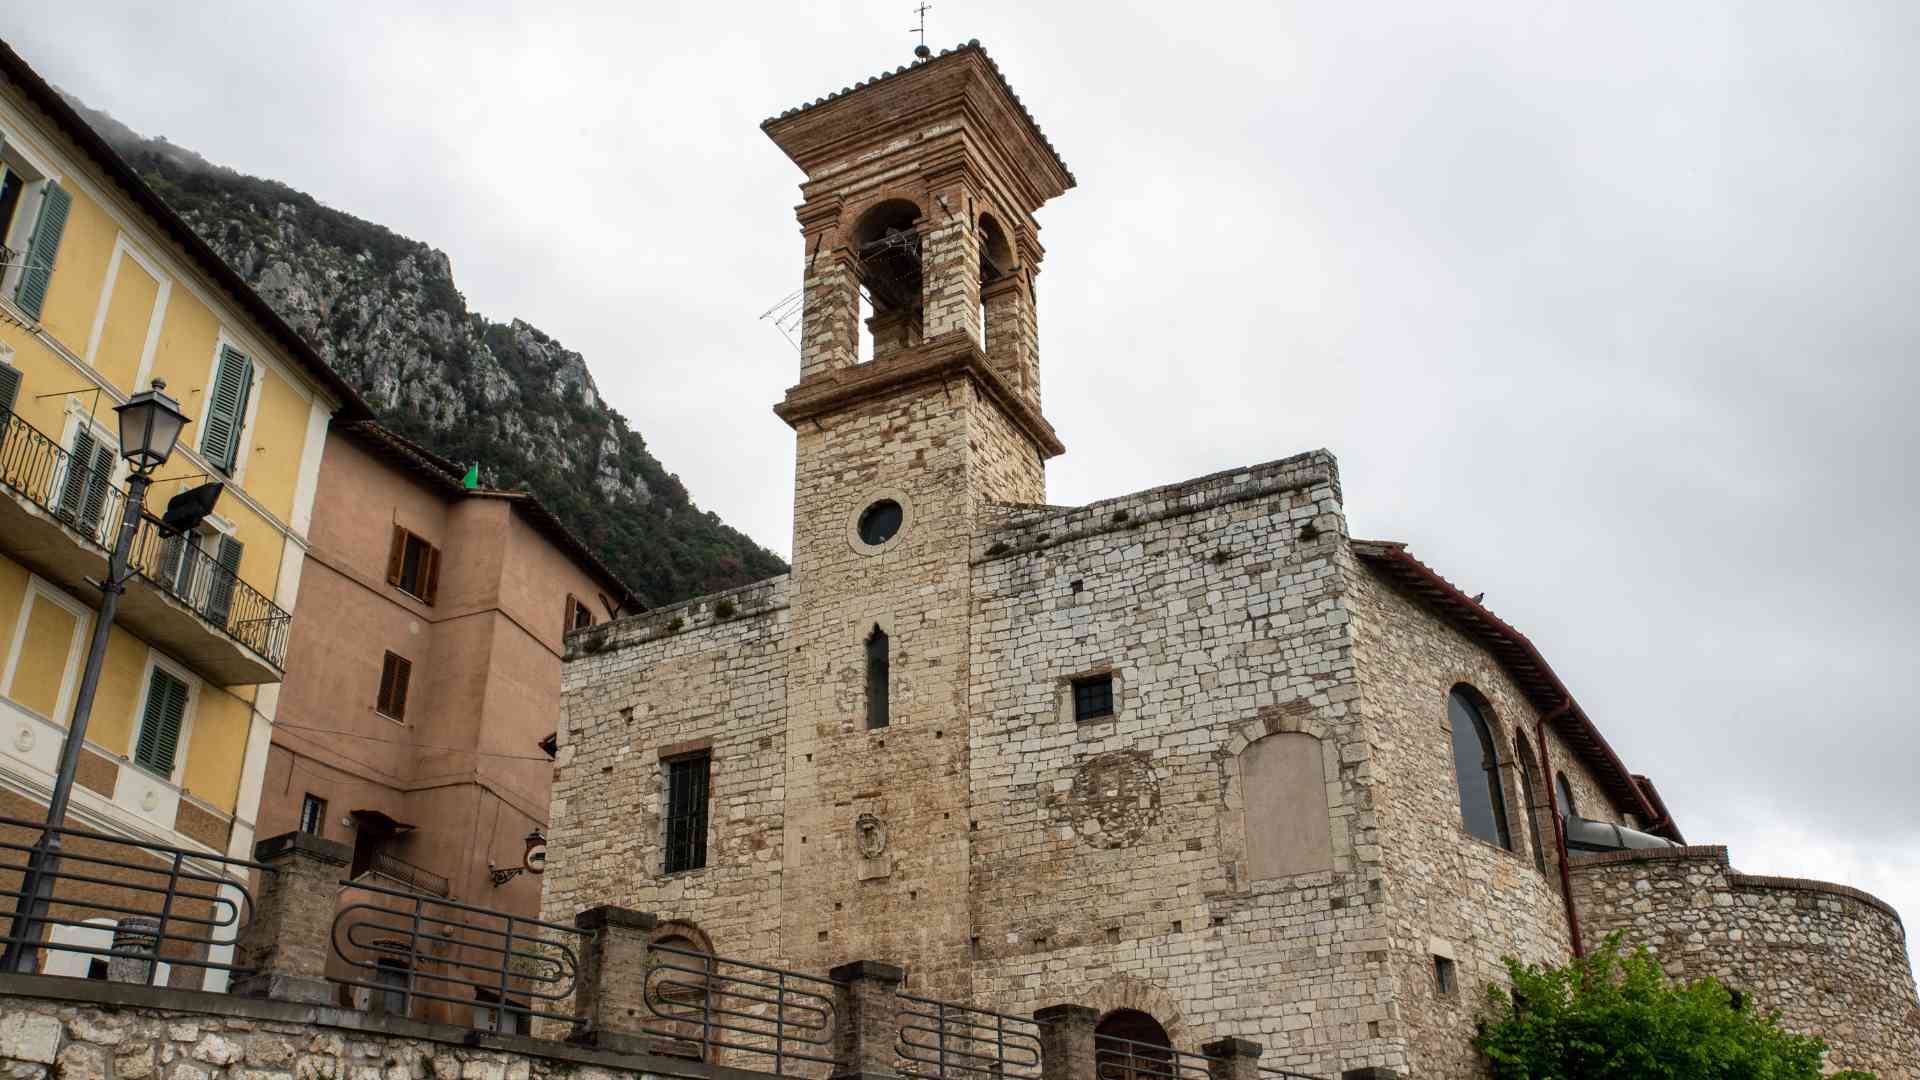 Centro storico di Cesi